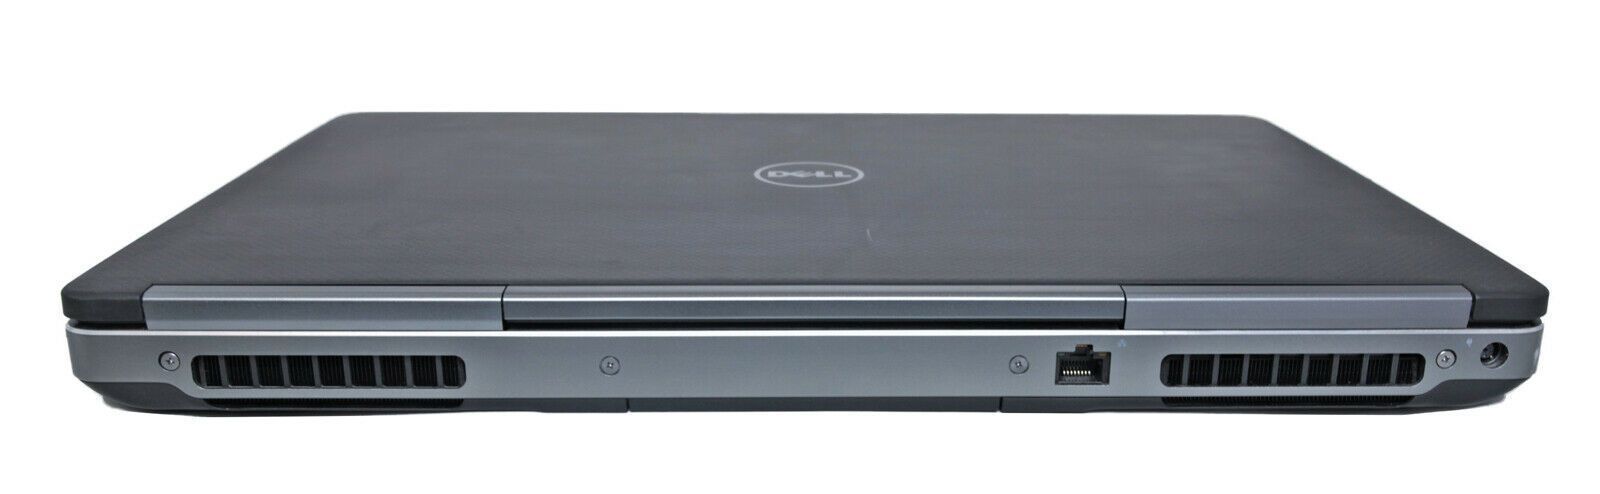 Dell Precision 7710 17.3" 4K CAD Laptop: 16GB RAM, Core i7-6820HQ, 256GB+1TB - CruiseTech